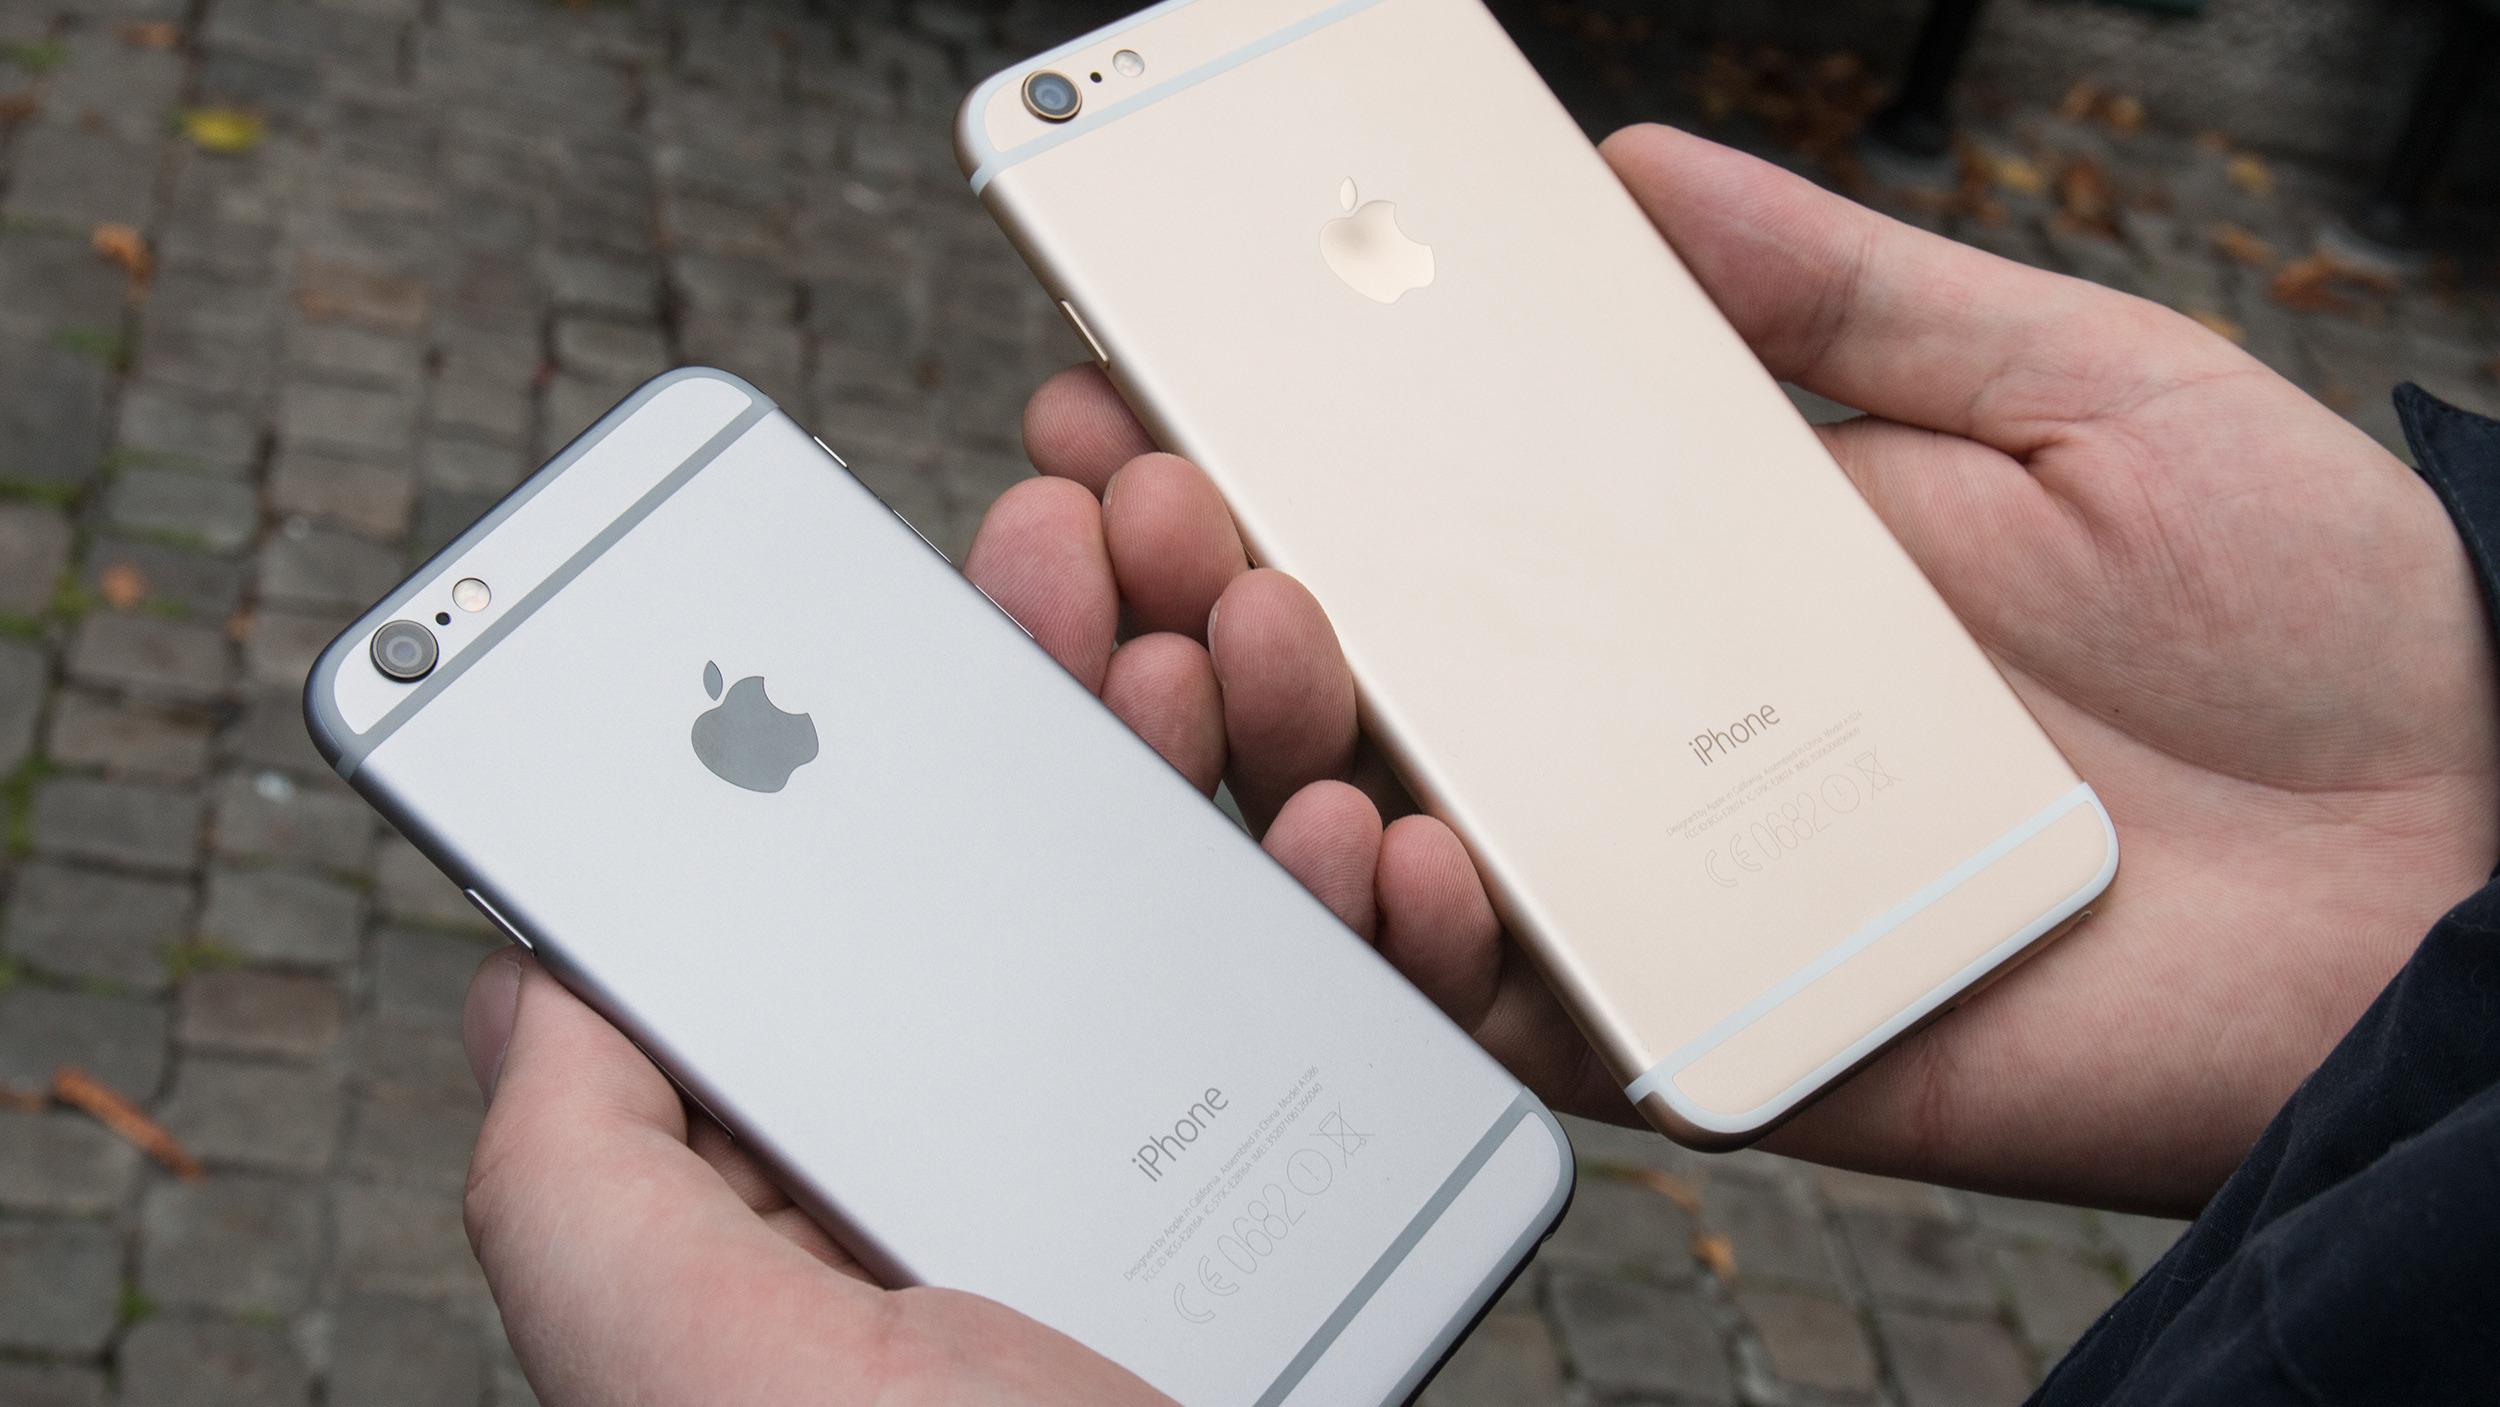 De nye iPhone-telefonene med Force Touch skal ha samme størrelse som de vanlige iPhone 6-modellene. Foto: Jørgen Elton Nilsen, Tek.no